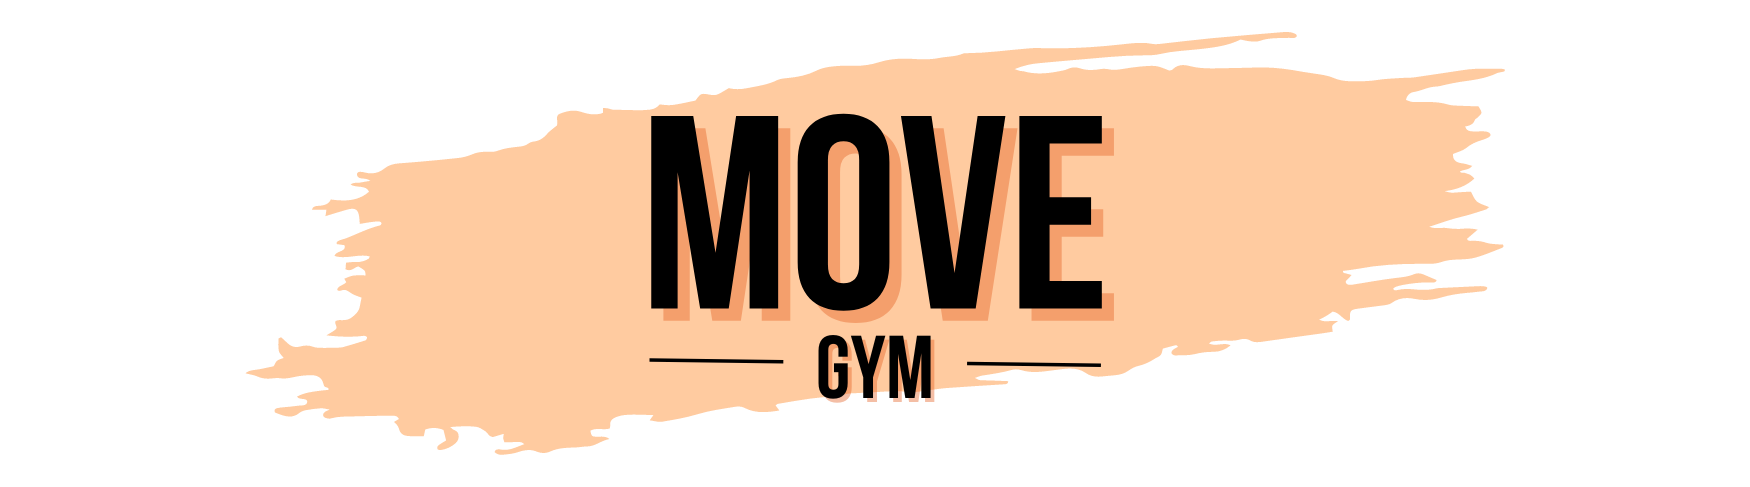 Move gym